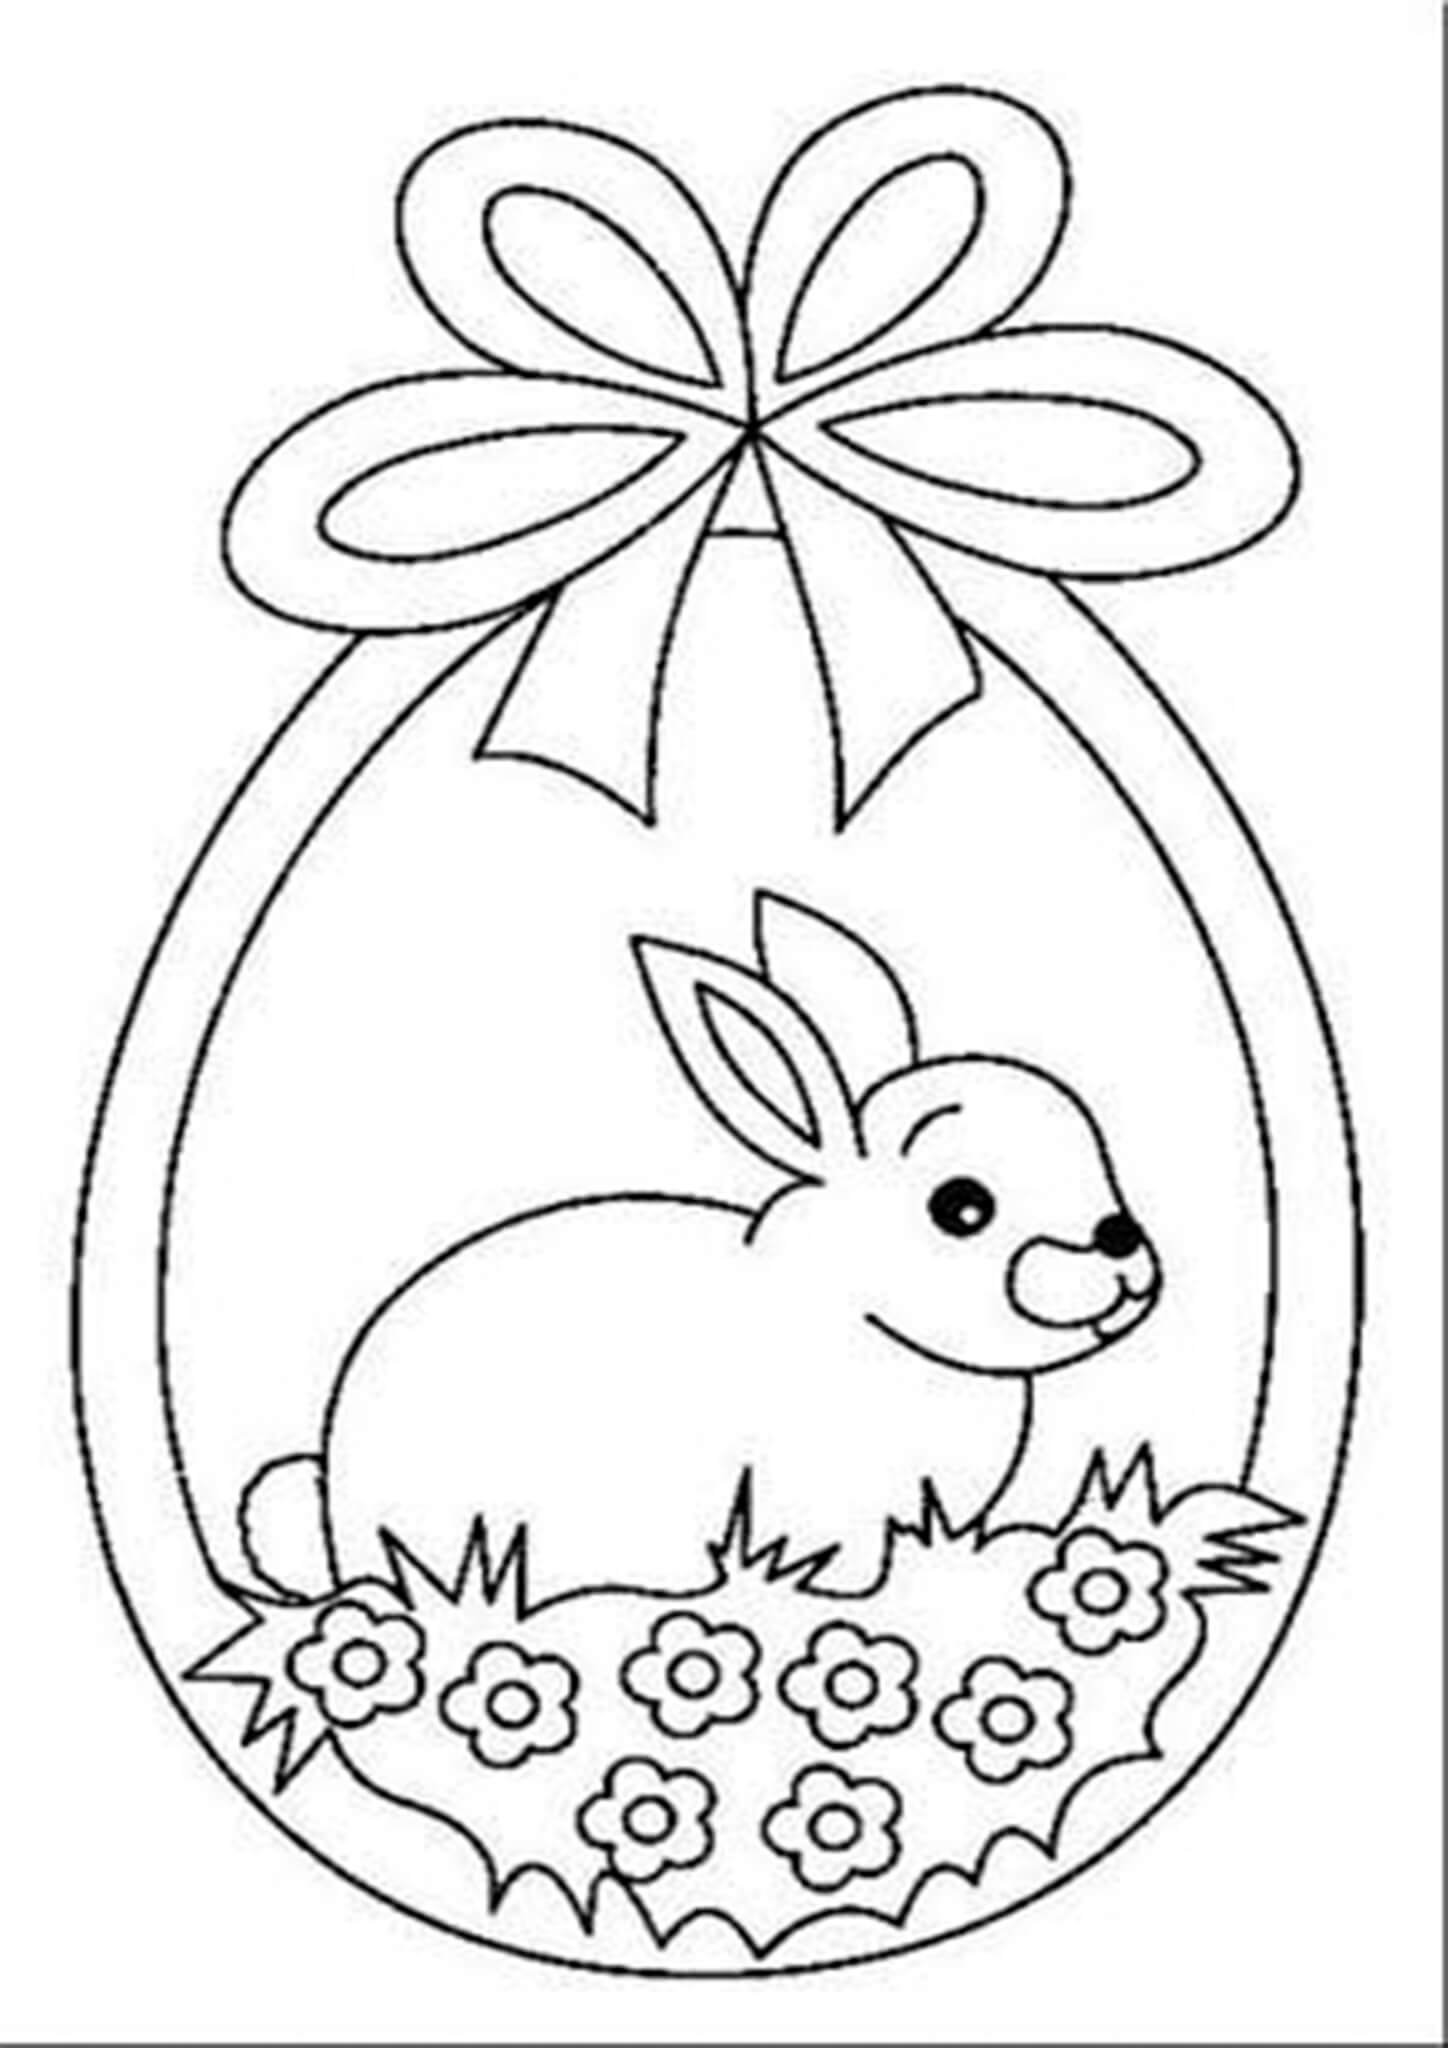 Шаблон пасхального кролика. Раскраска Пасха. Раскраски пасхальные для детей. Раскраска Пасха для детей. Трафареты к Пасхе для детей.